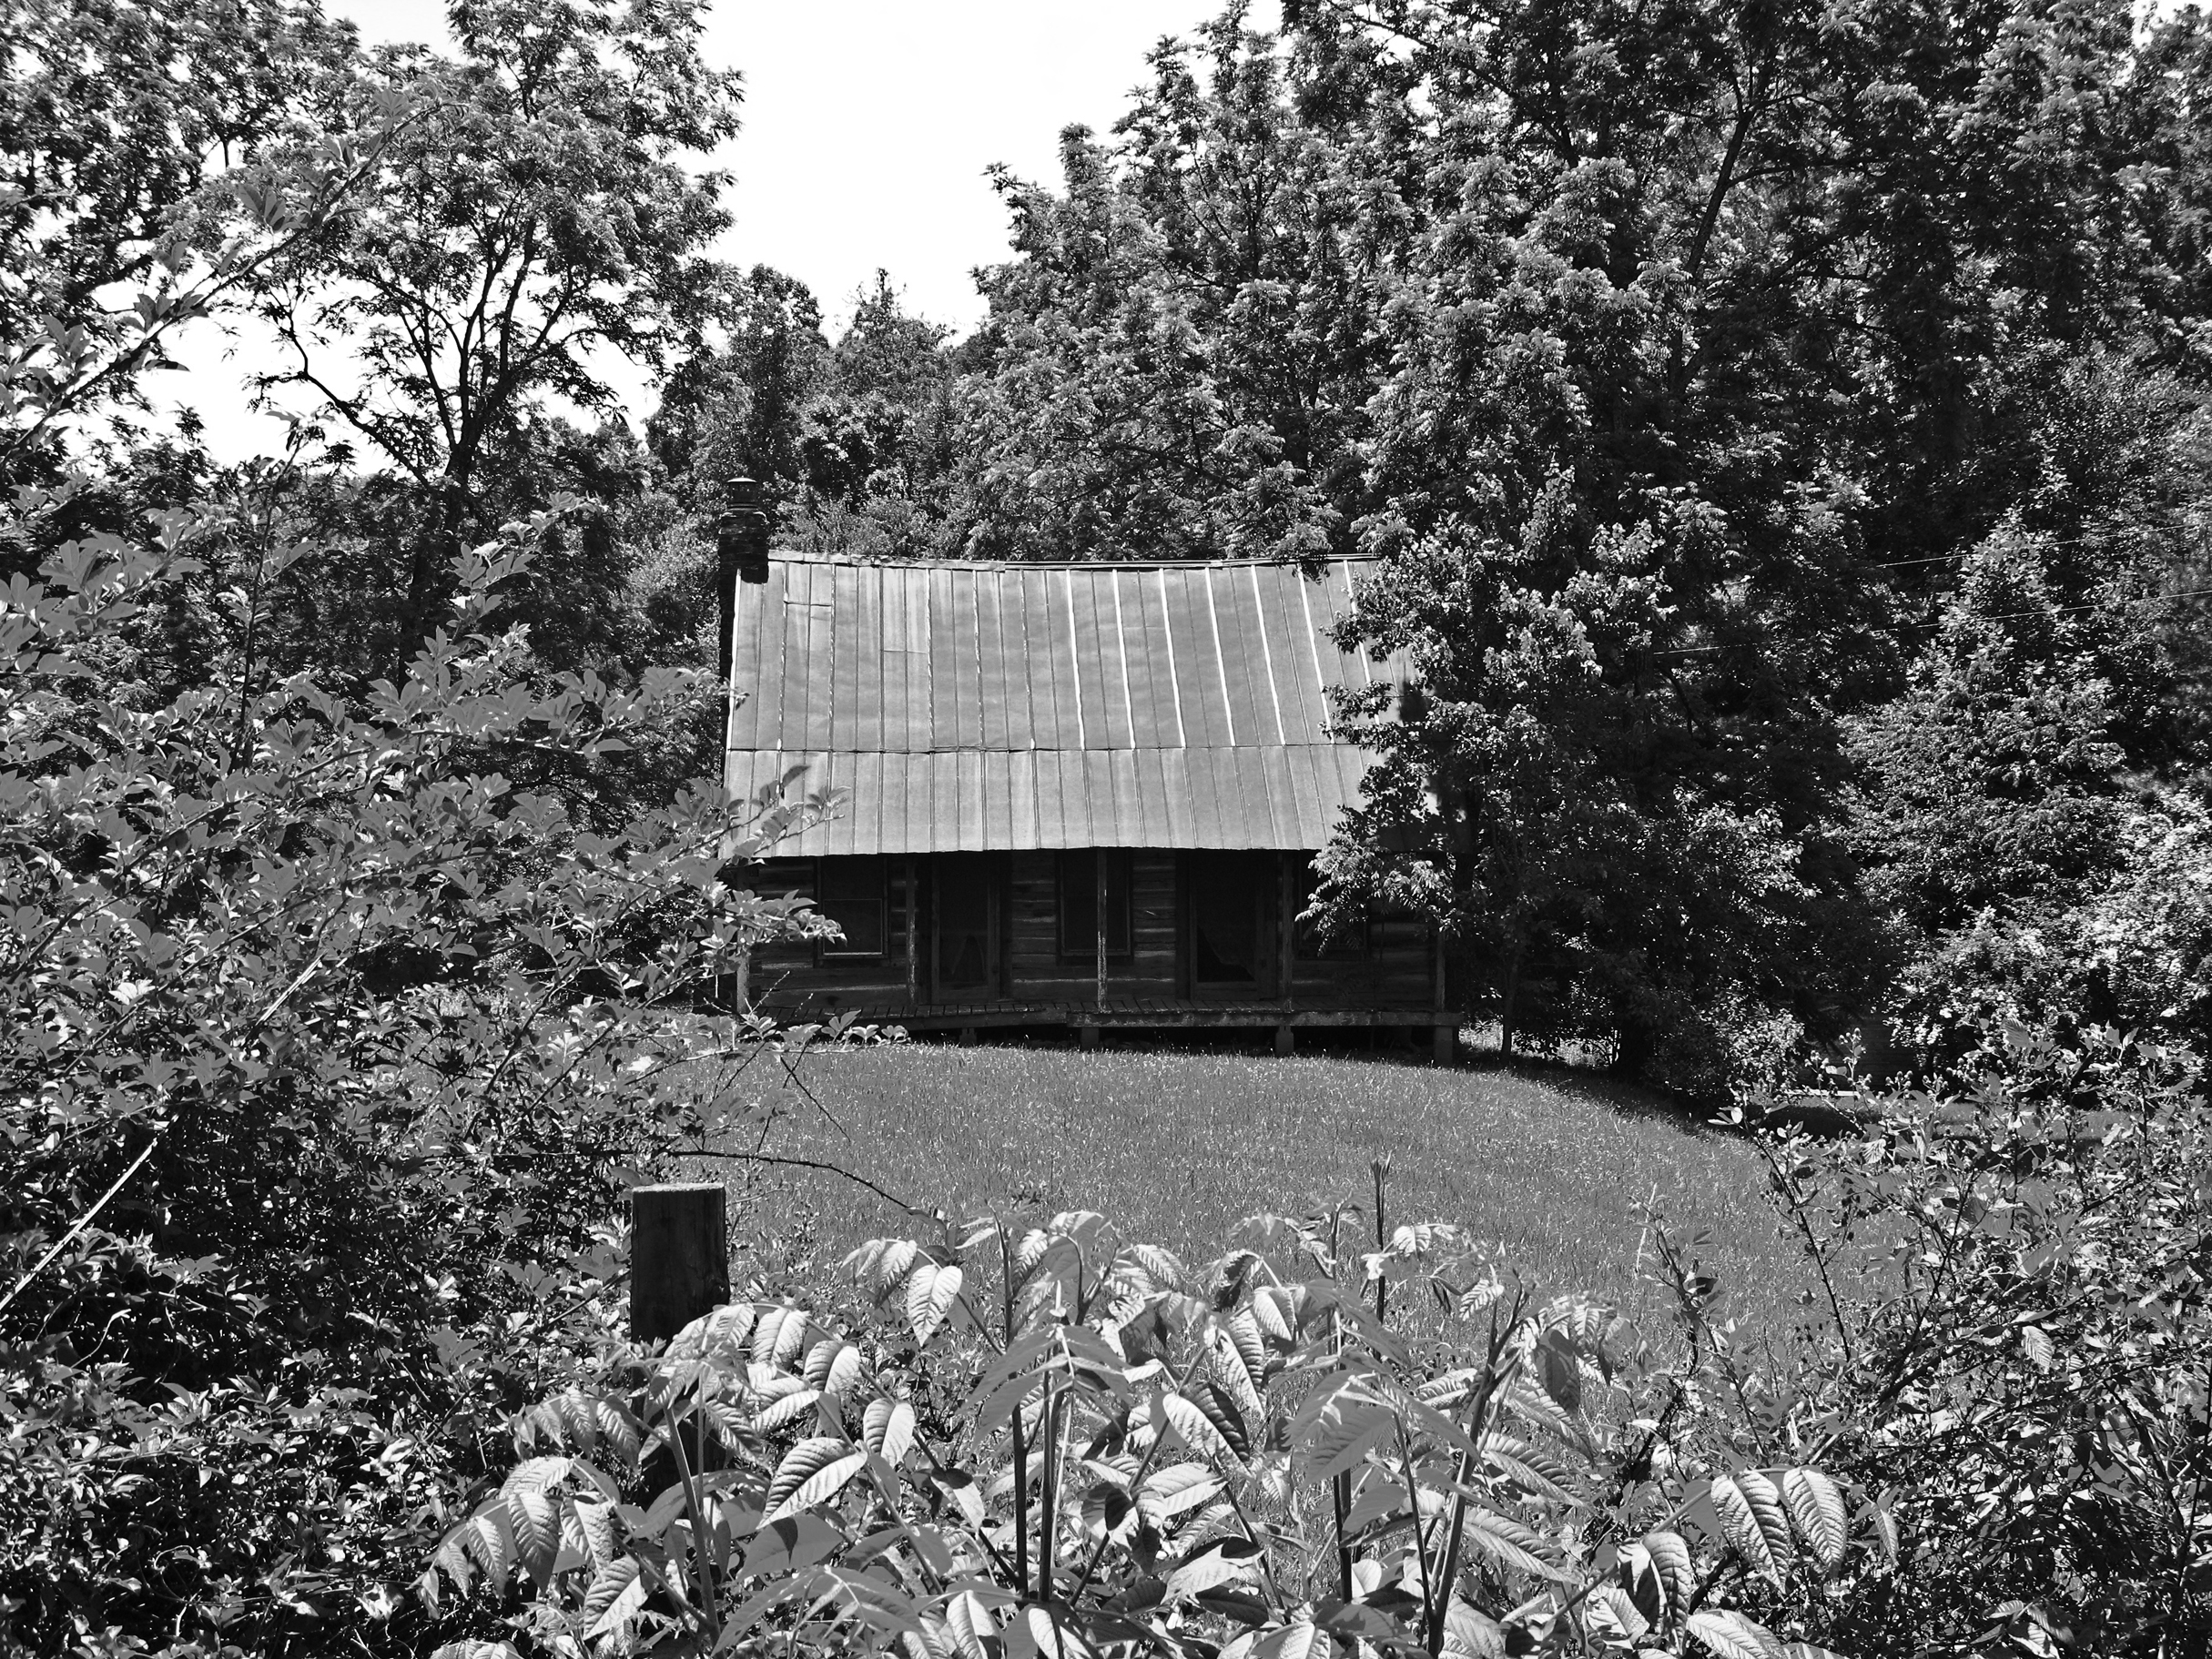    Civil War Cabin  , Fannin County, GA, 2013. B&amp;W HDR digital image. 